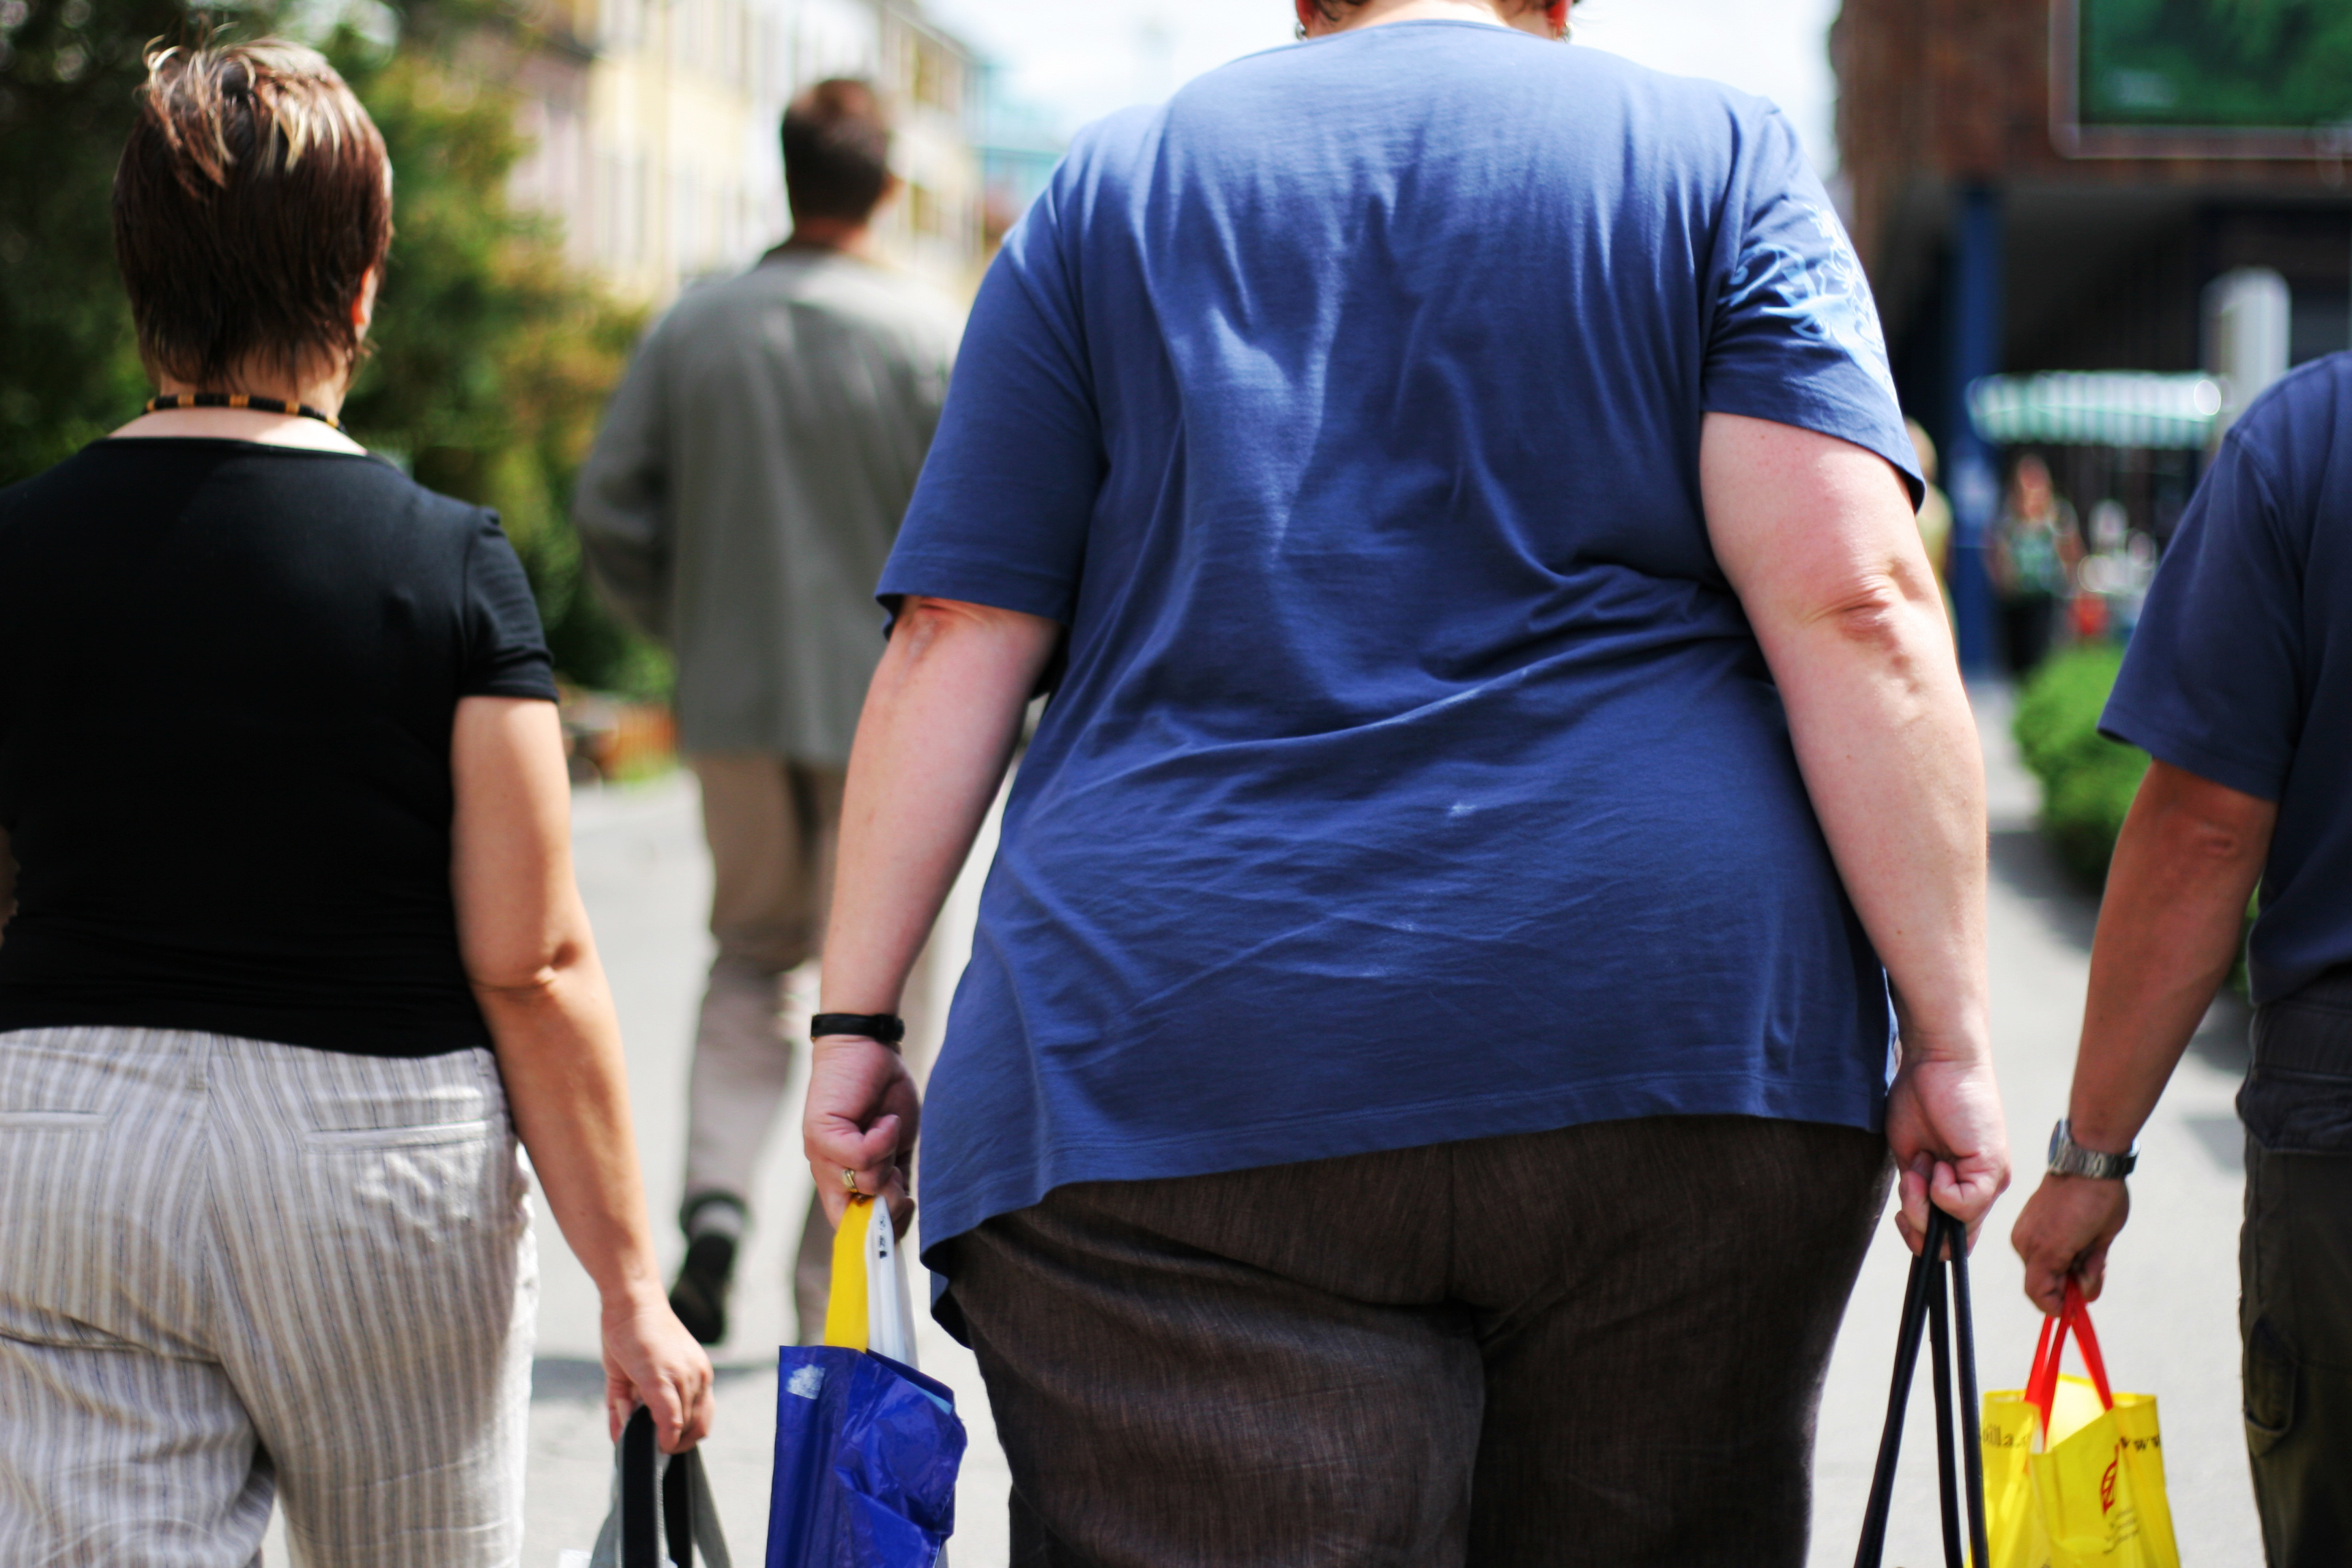 Obesity in the UK